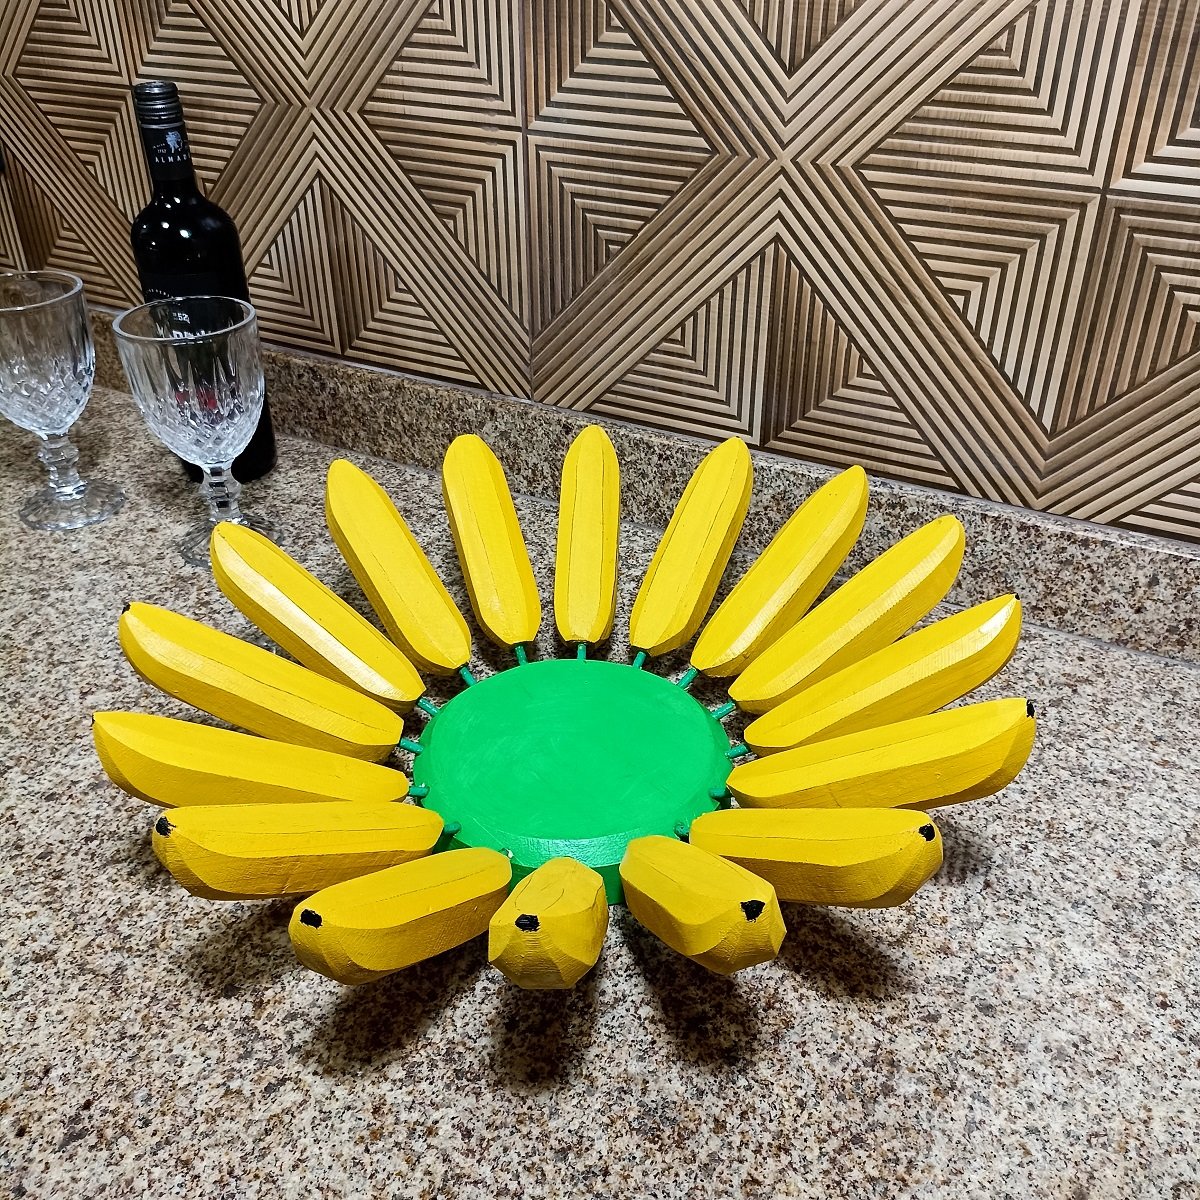 Fruteira Fruta de Mesa em Formato de Banana Artesanato Rústico Feito de Madeira super resistente ide - 7